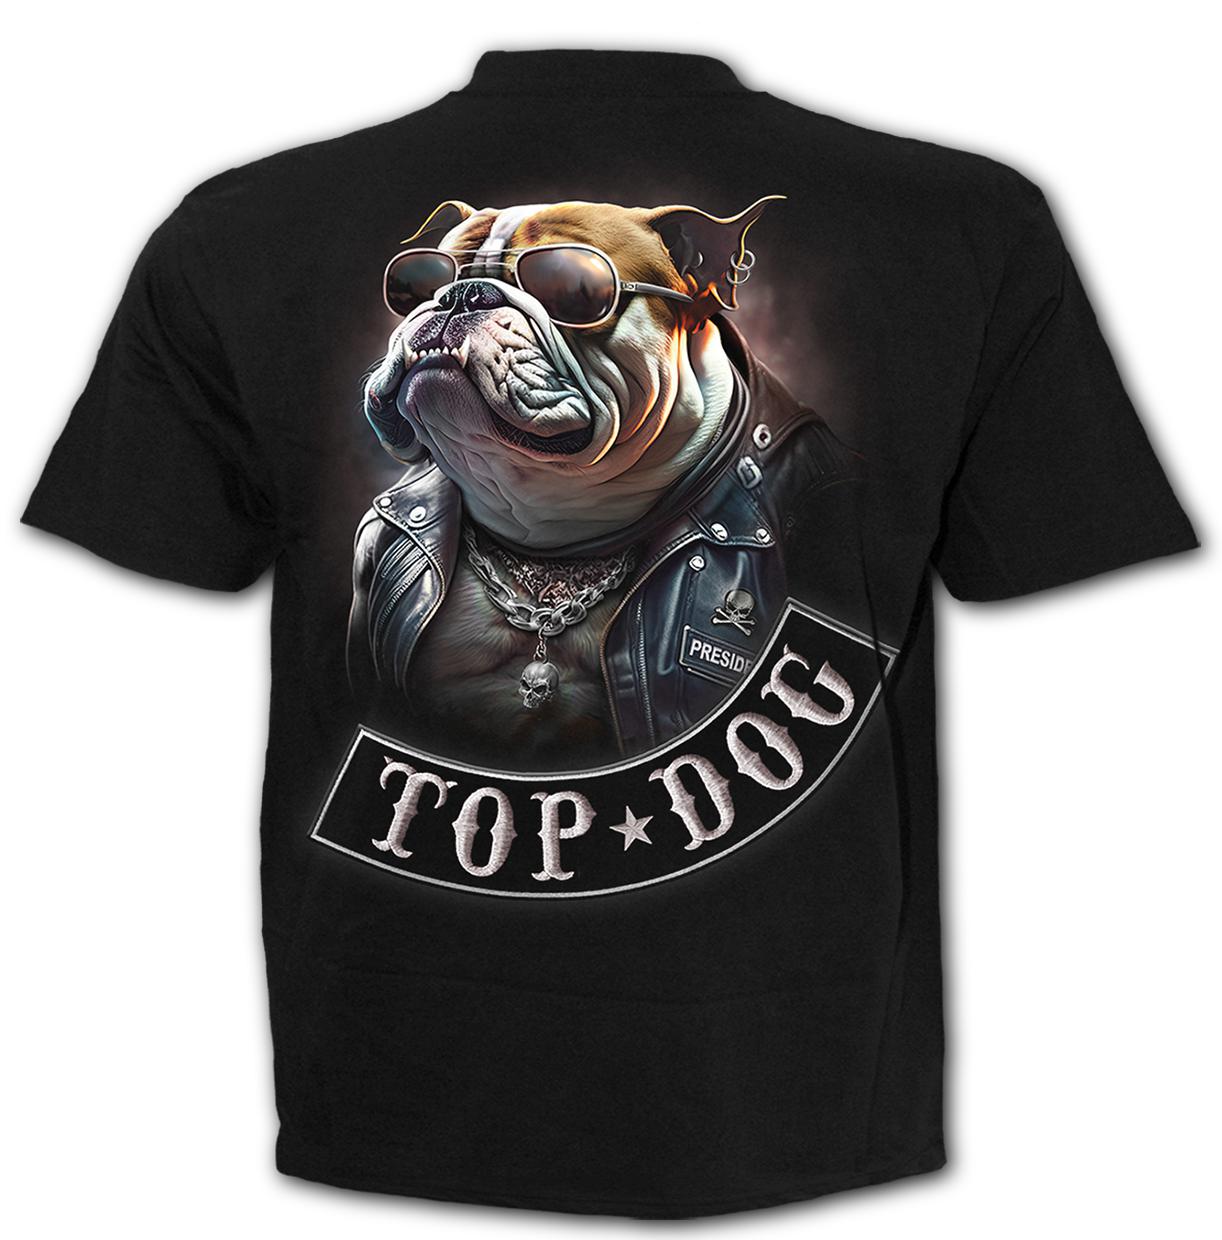 Top Dog - T-Shirt Black